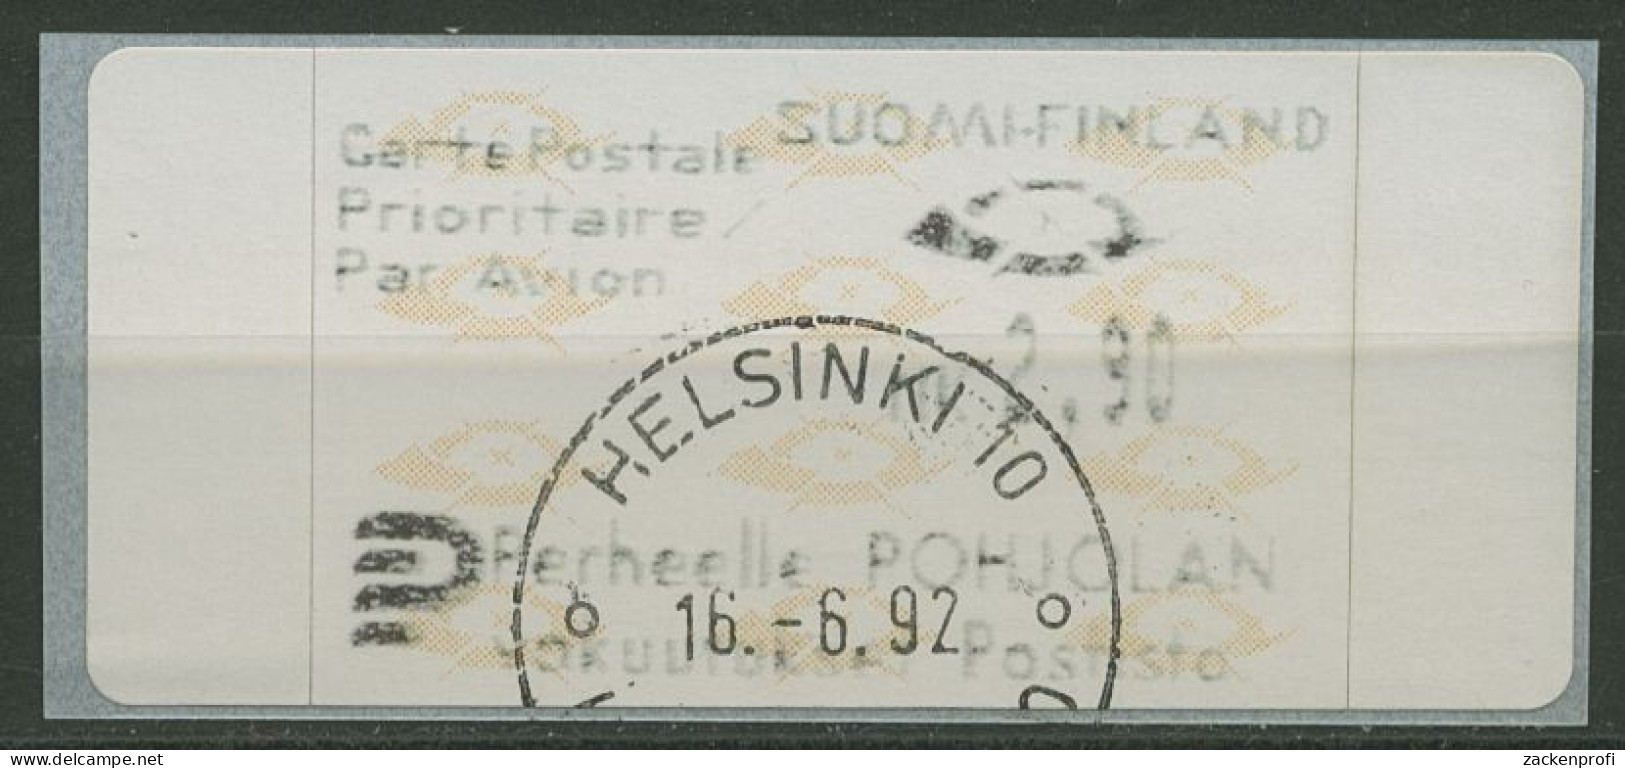 Finnland Automatenmarken 1992 Posthörner Einzelwert ATM 12.3 Z3 Gestempelt - Timbres De Distributeurs [ATM]